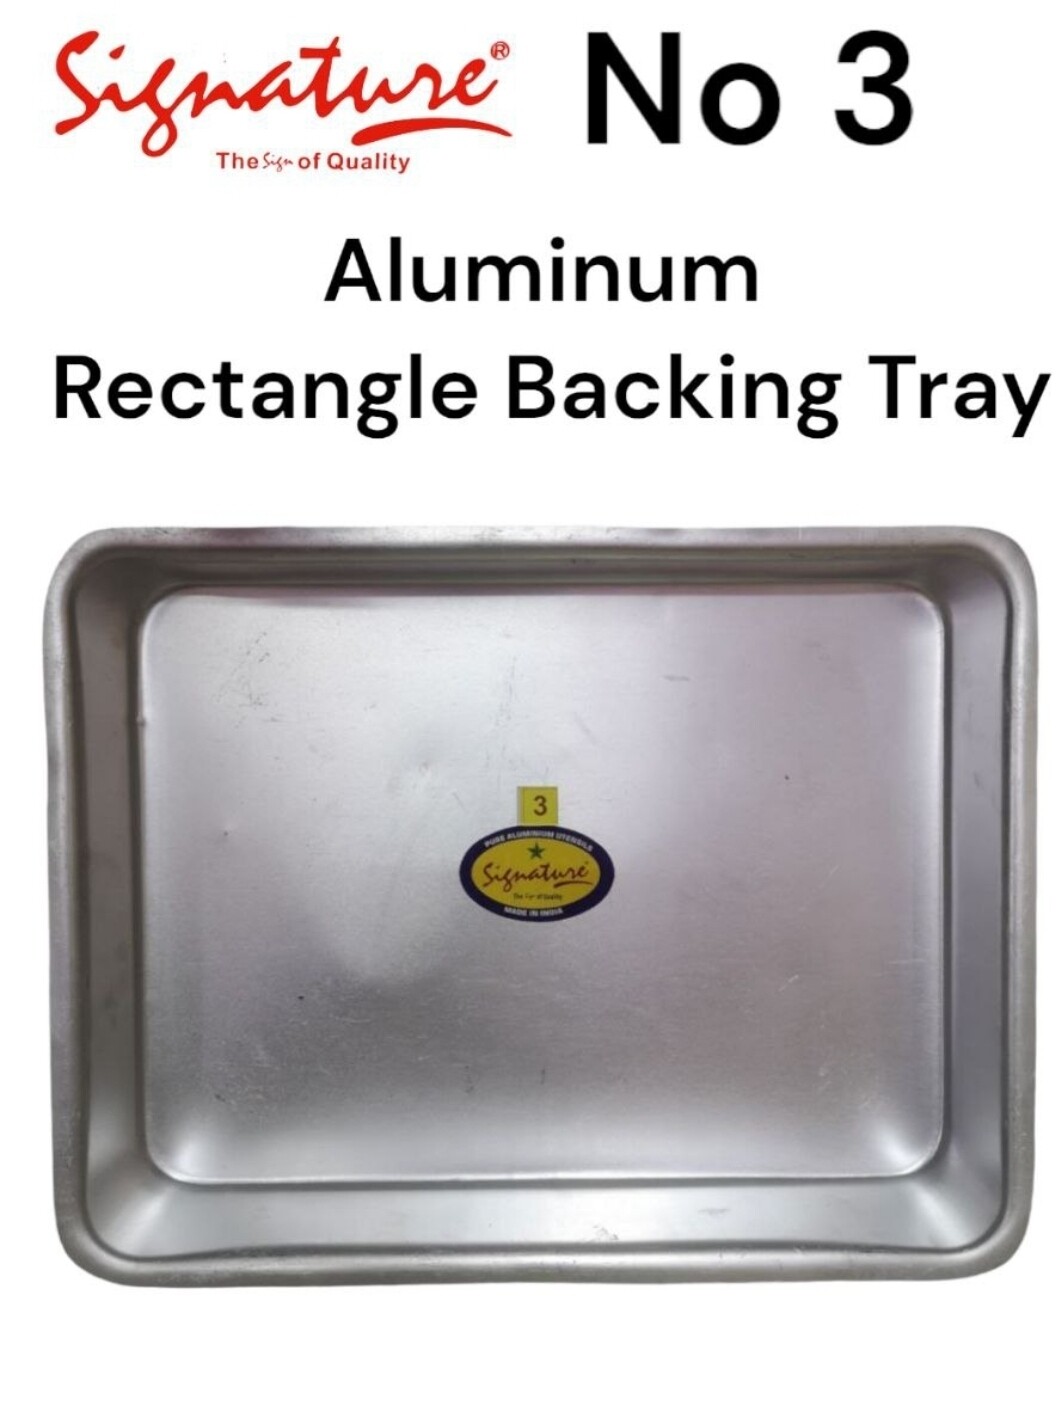 Signature aluminium backing tray no 3